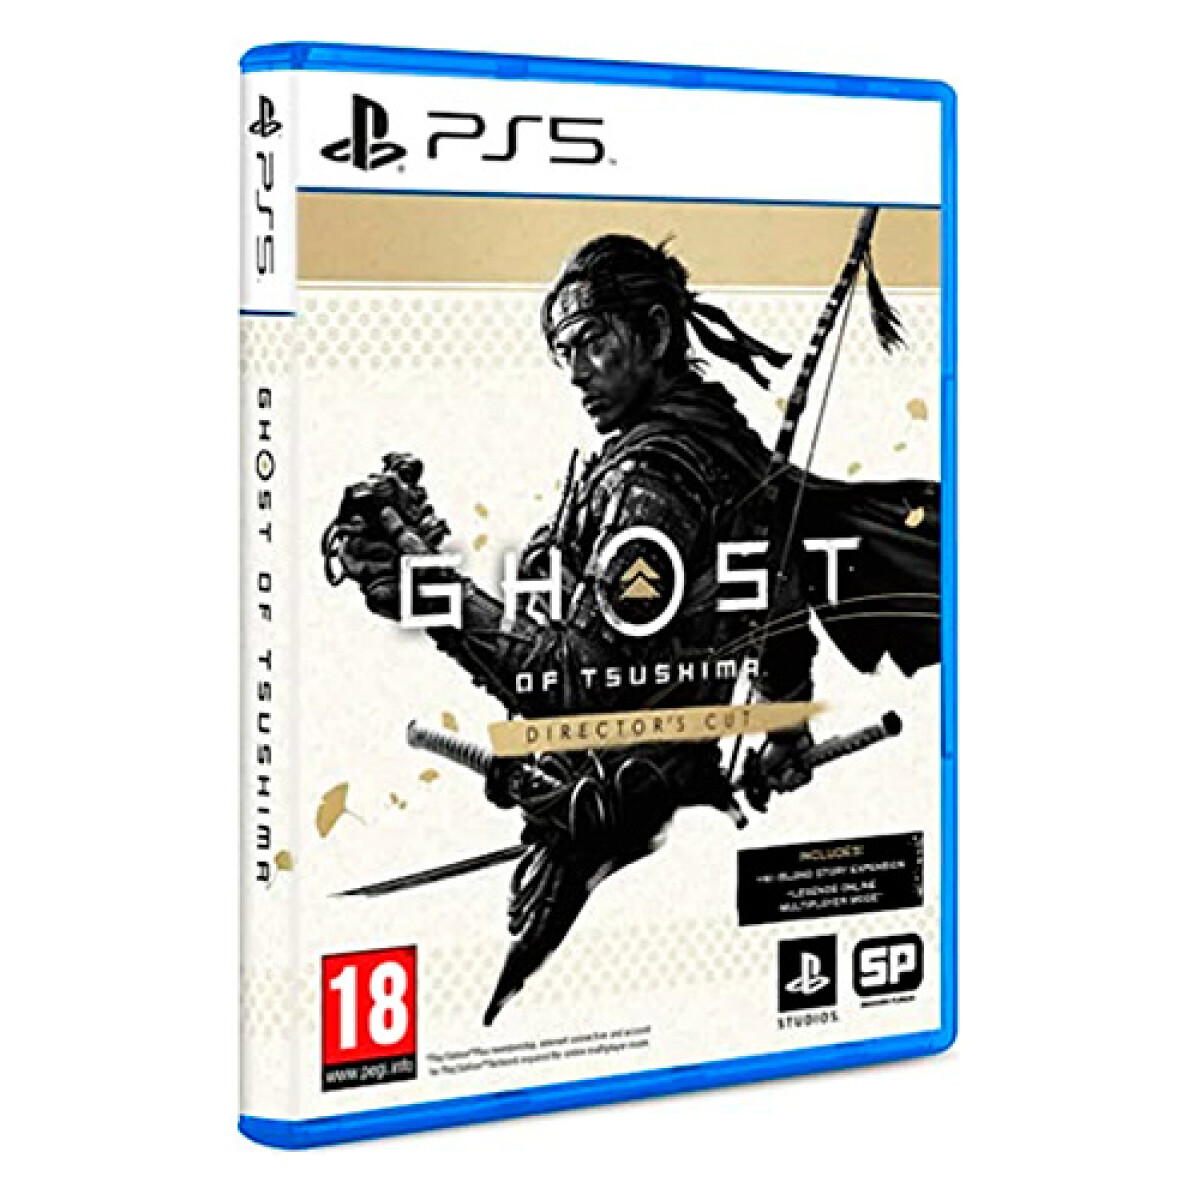 Juego Ghost Of Tsushima Directors Cut Playstation 5 PS5 - 001 